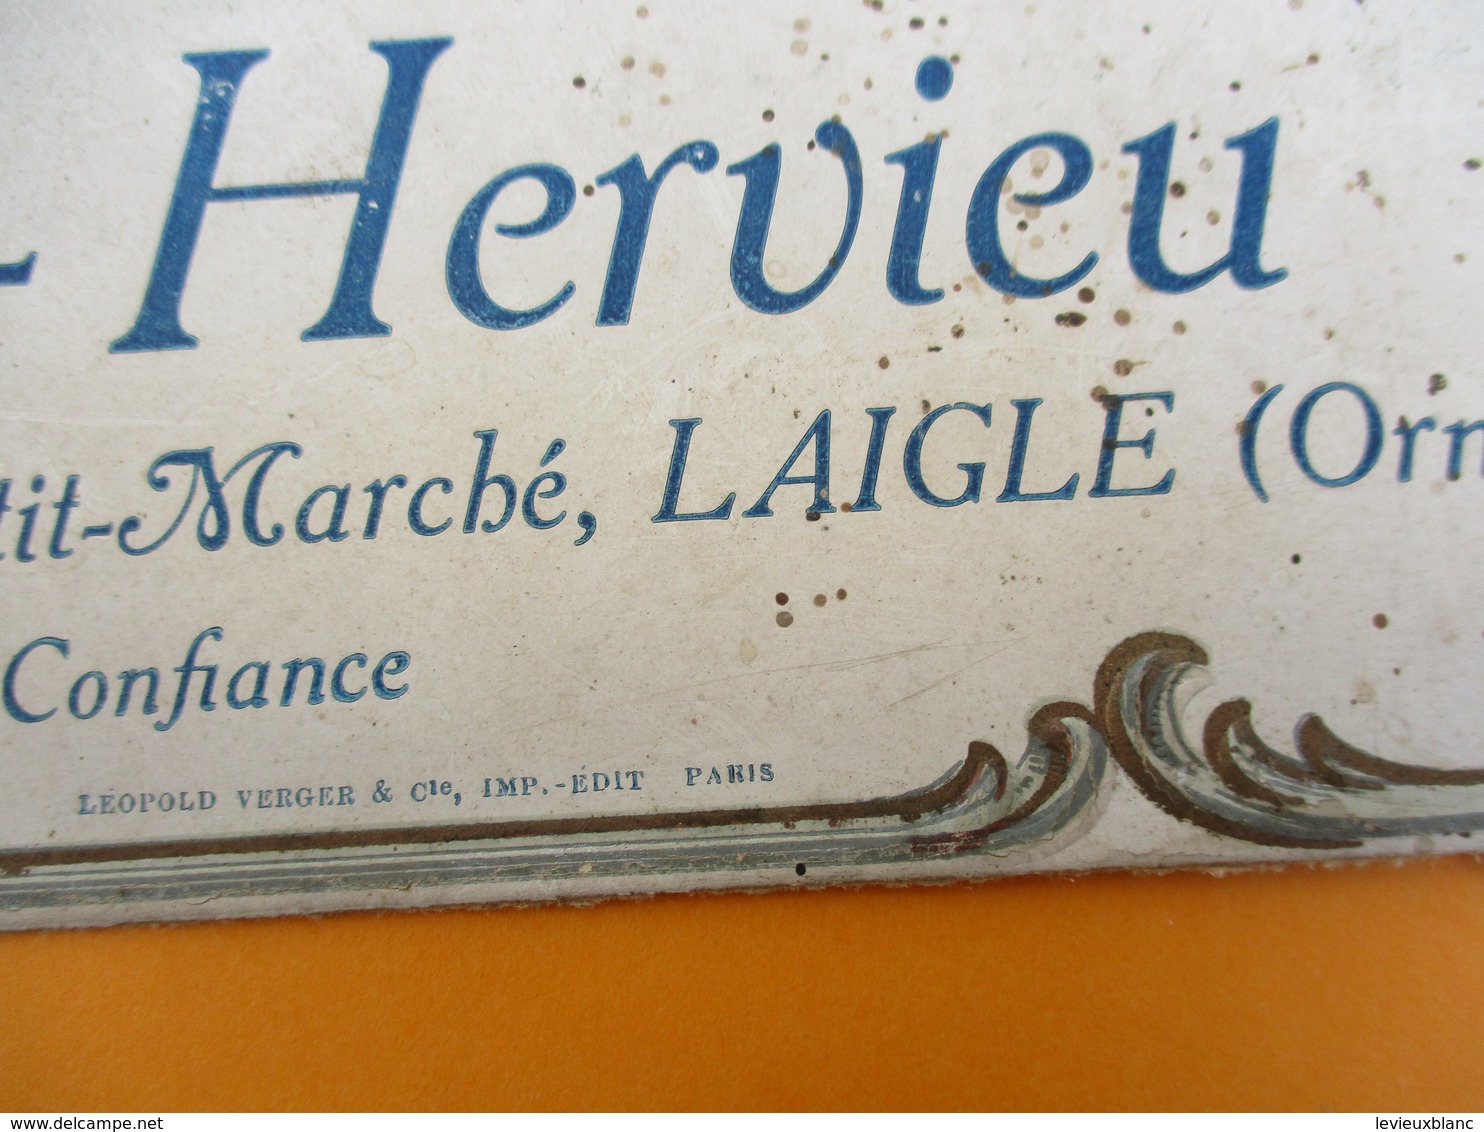 Bandeau Carton  De Support De Courrier/ Frainais-Hervieu/Nouveautés En Tous Genres/ LAIGLE/Orne/Vers 1900-1920   BFPP208 - Sonstige & Ohne Zuordnung